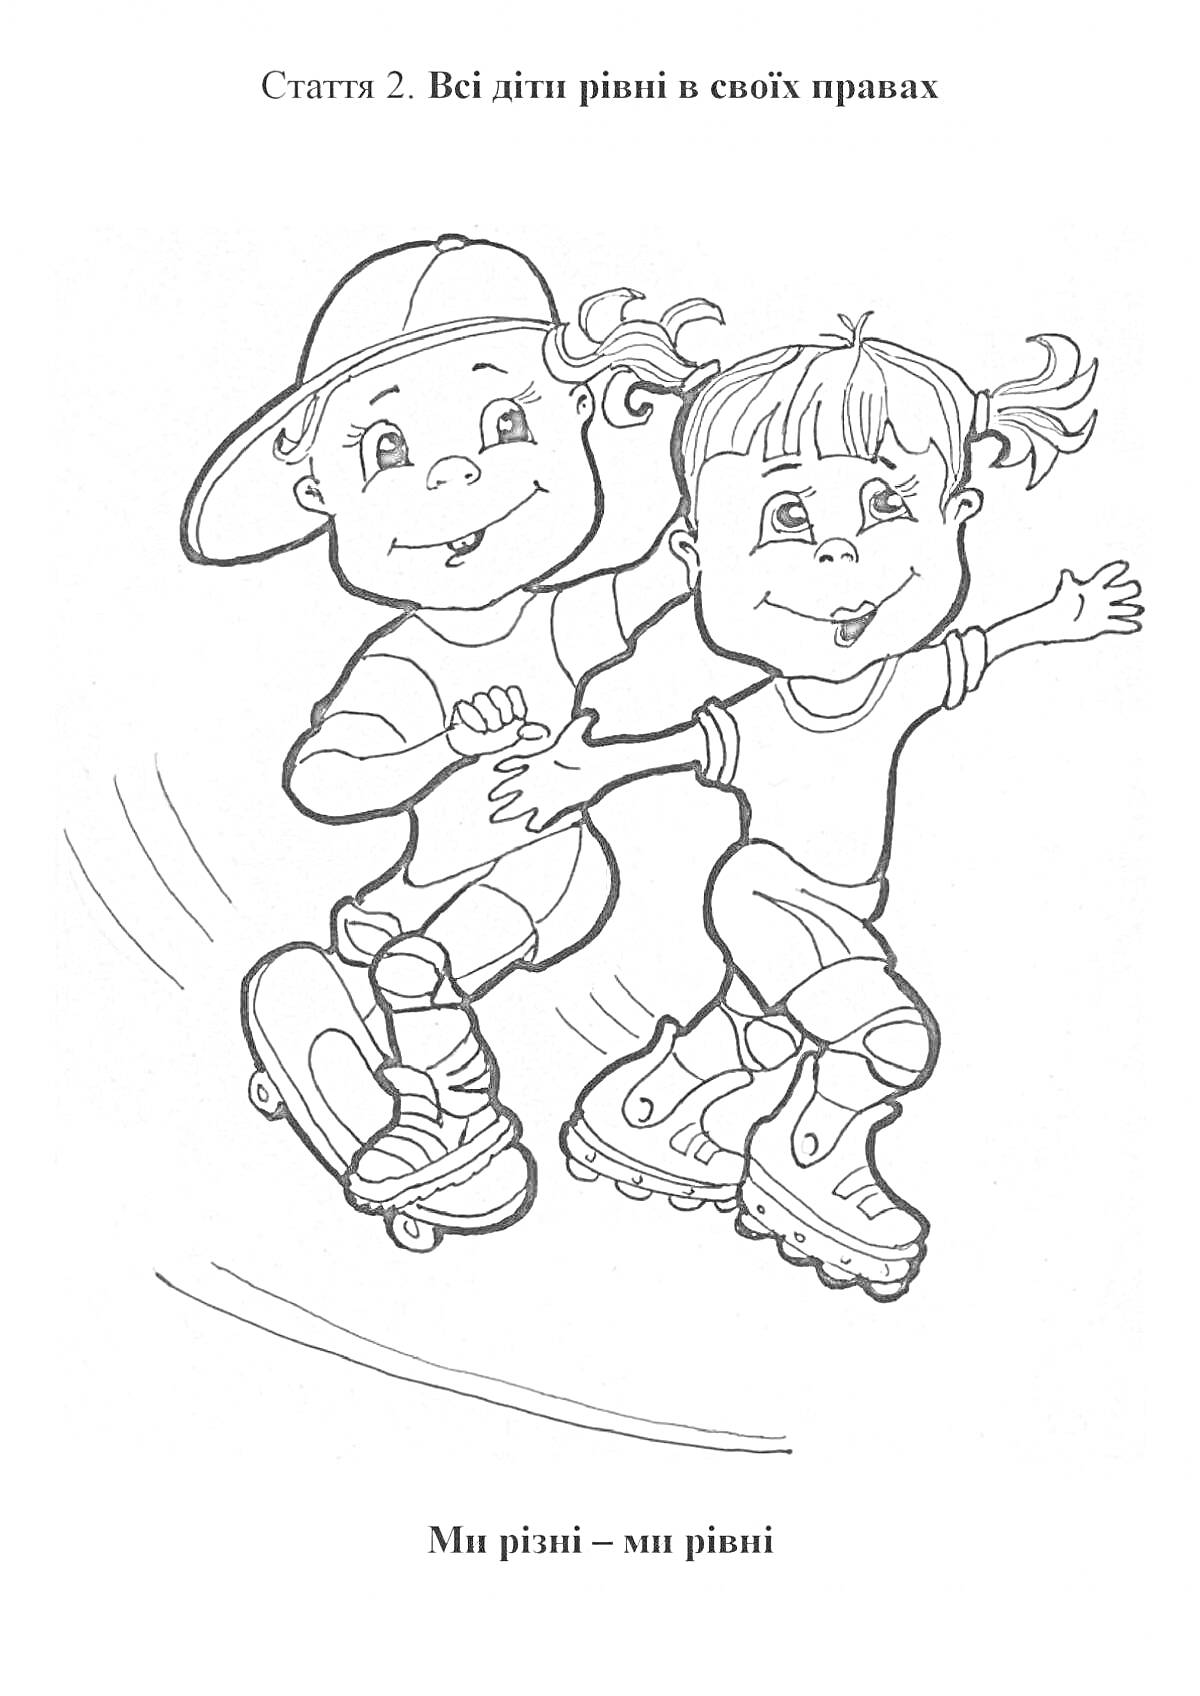 Две радостные девочки на спортивных роликовых коньках и скейтборде